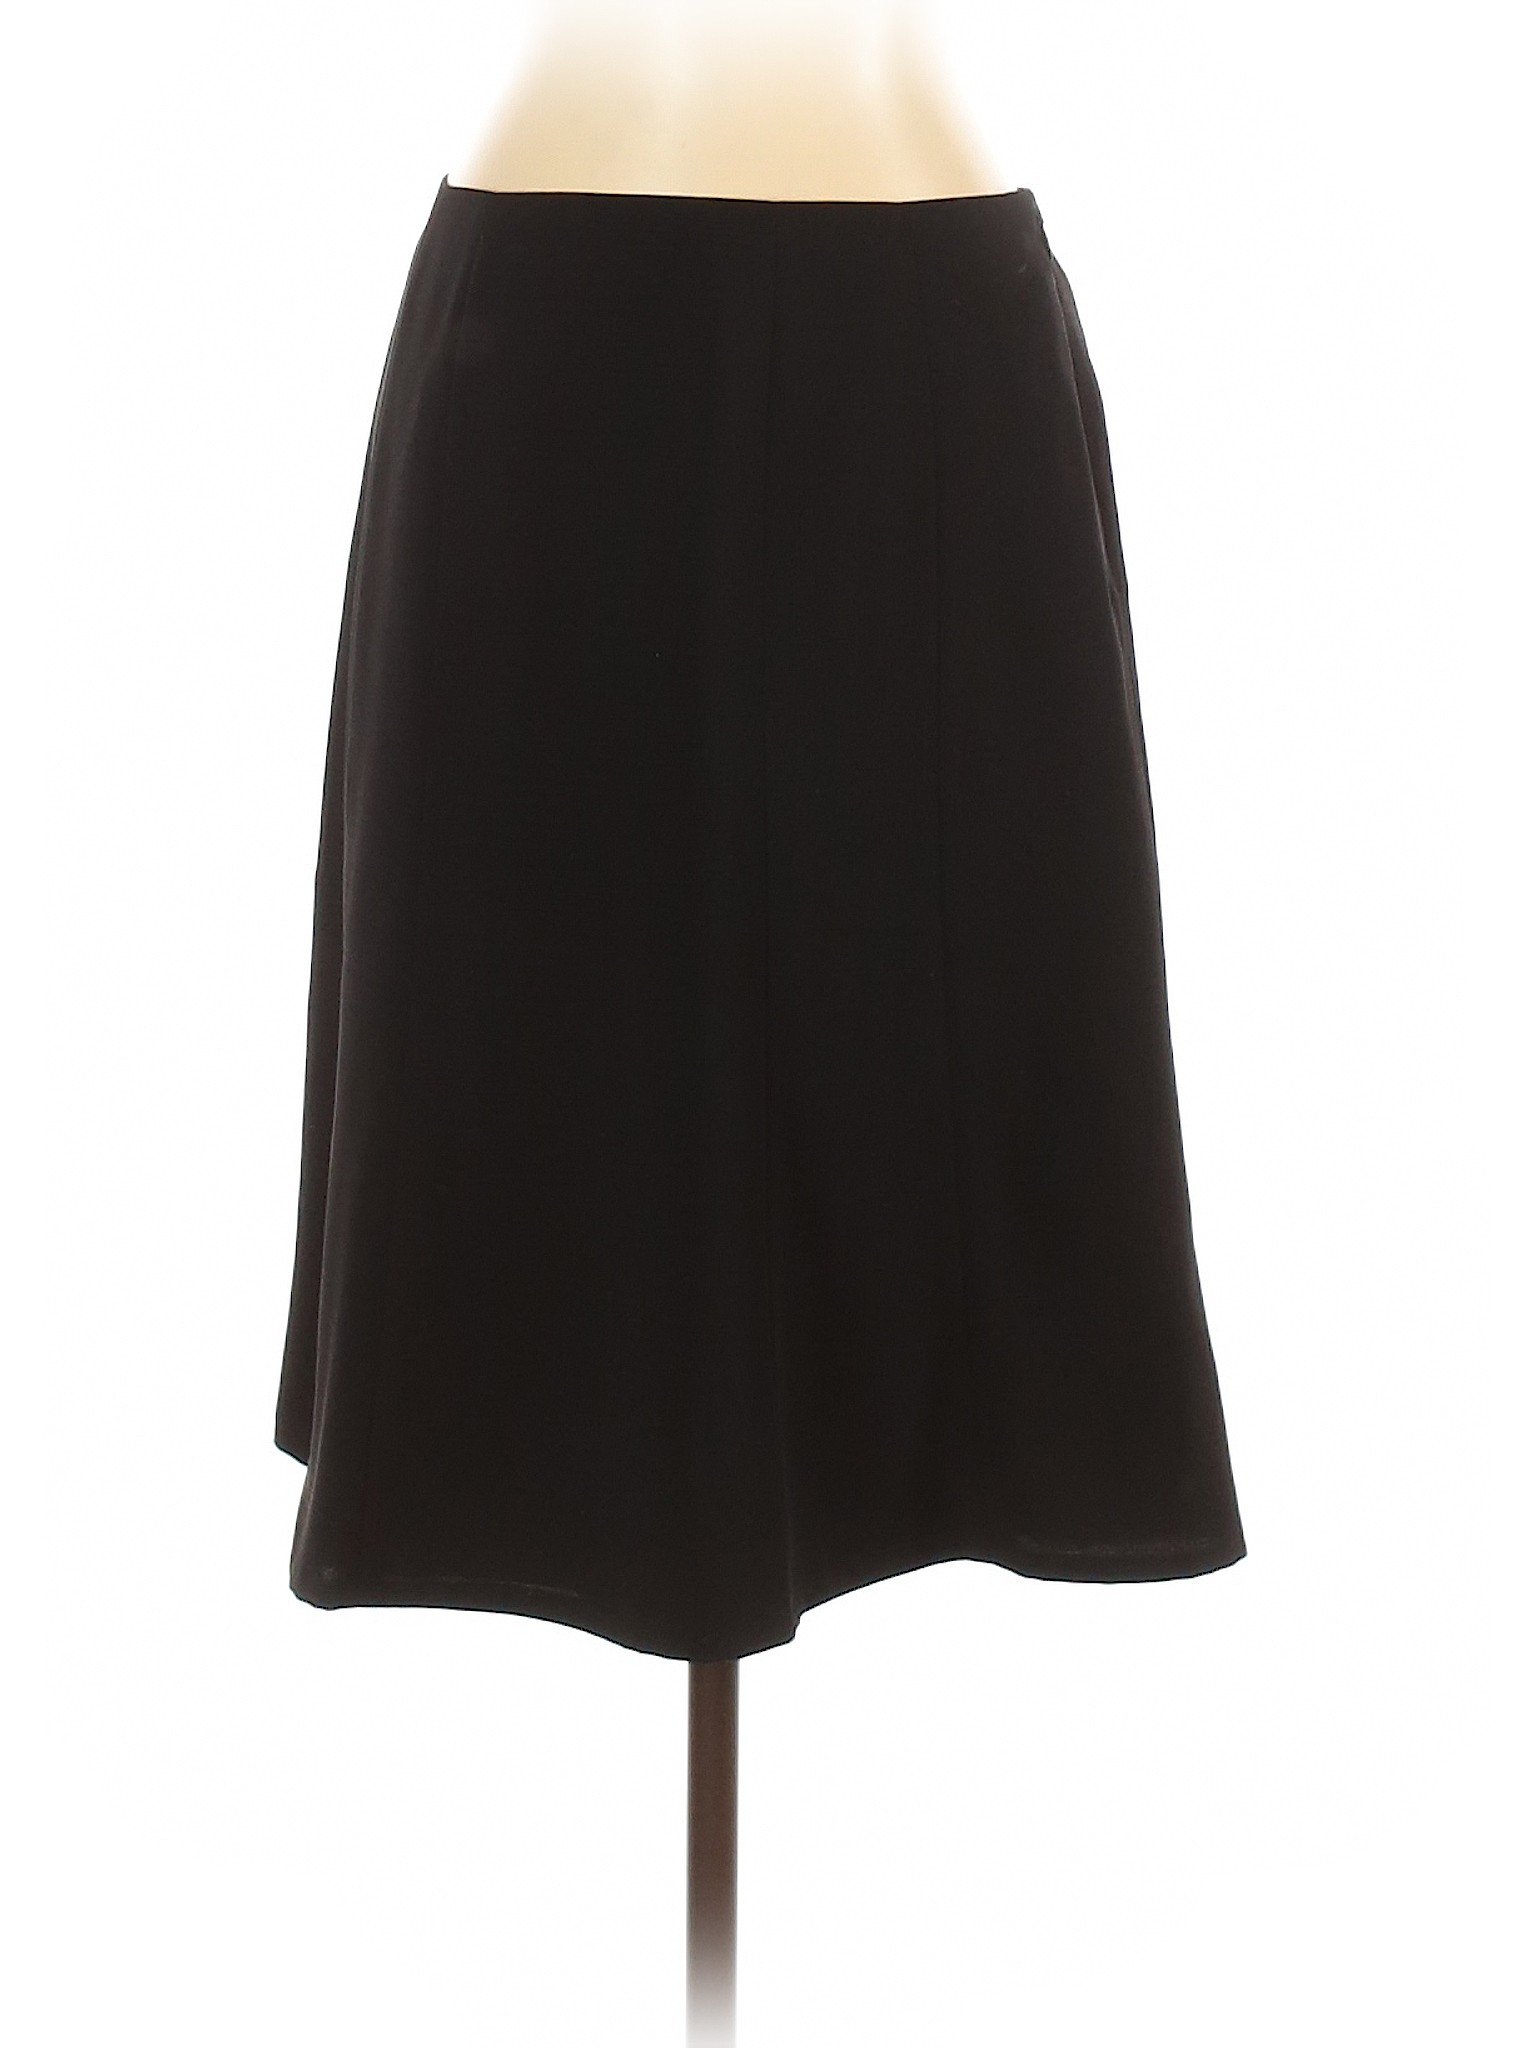 Calvin Klein Women Black Casual Skirt 4 | eBay